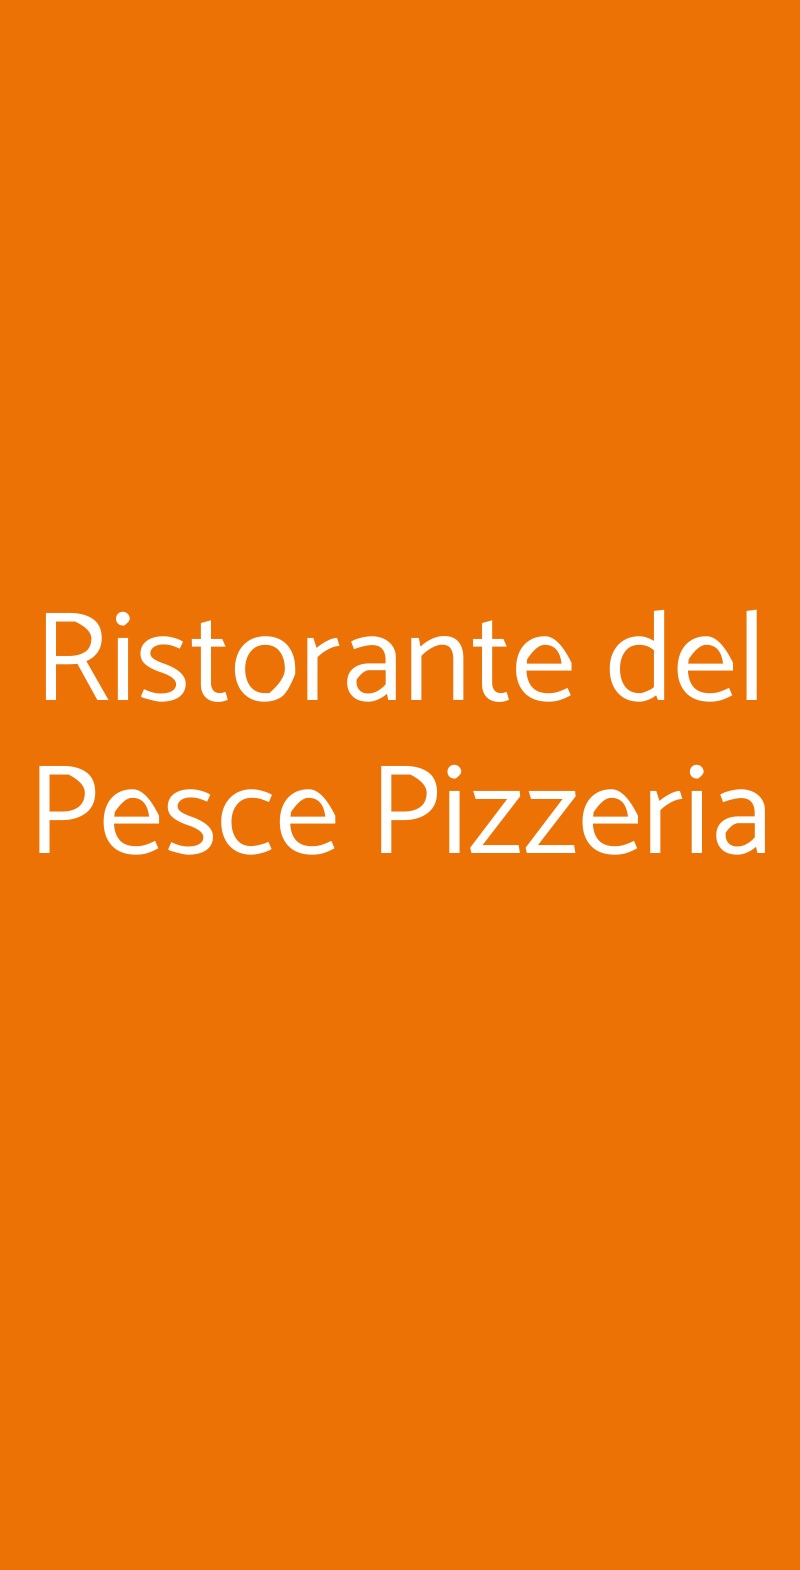 Ristorante del Pesce Pizzeria Villa d'Adda menù 1 pagina